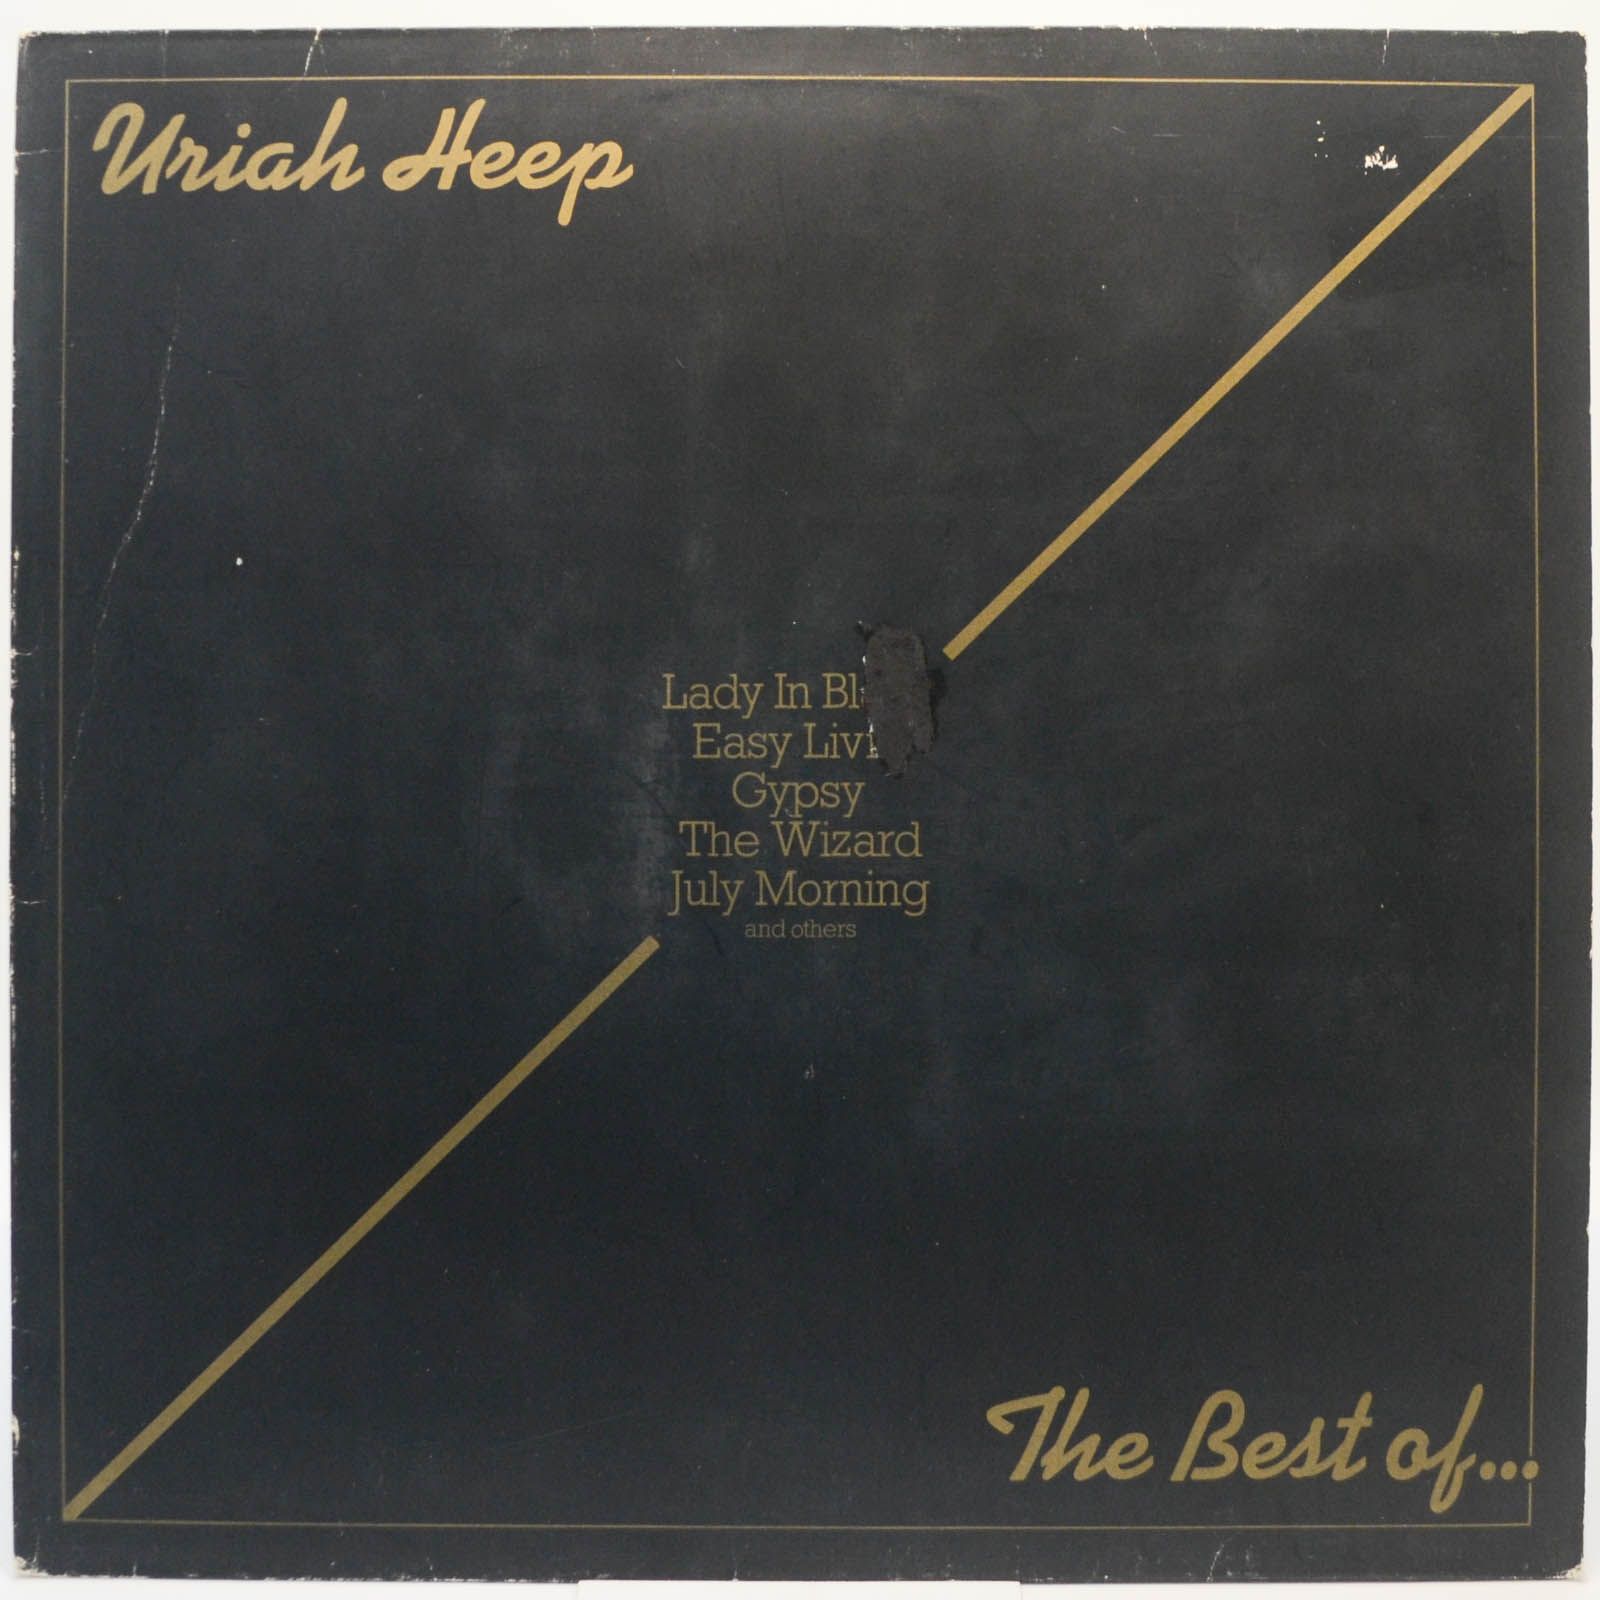 Uriah Heep — The Best Of... (1-st, UK), 1975